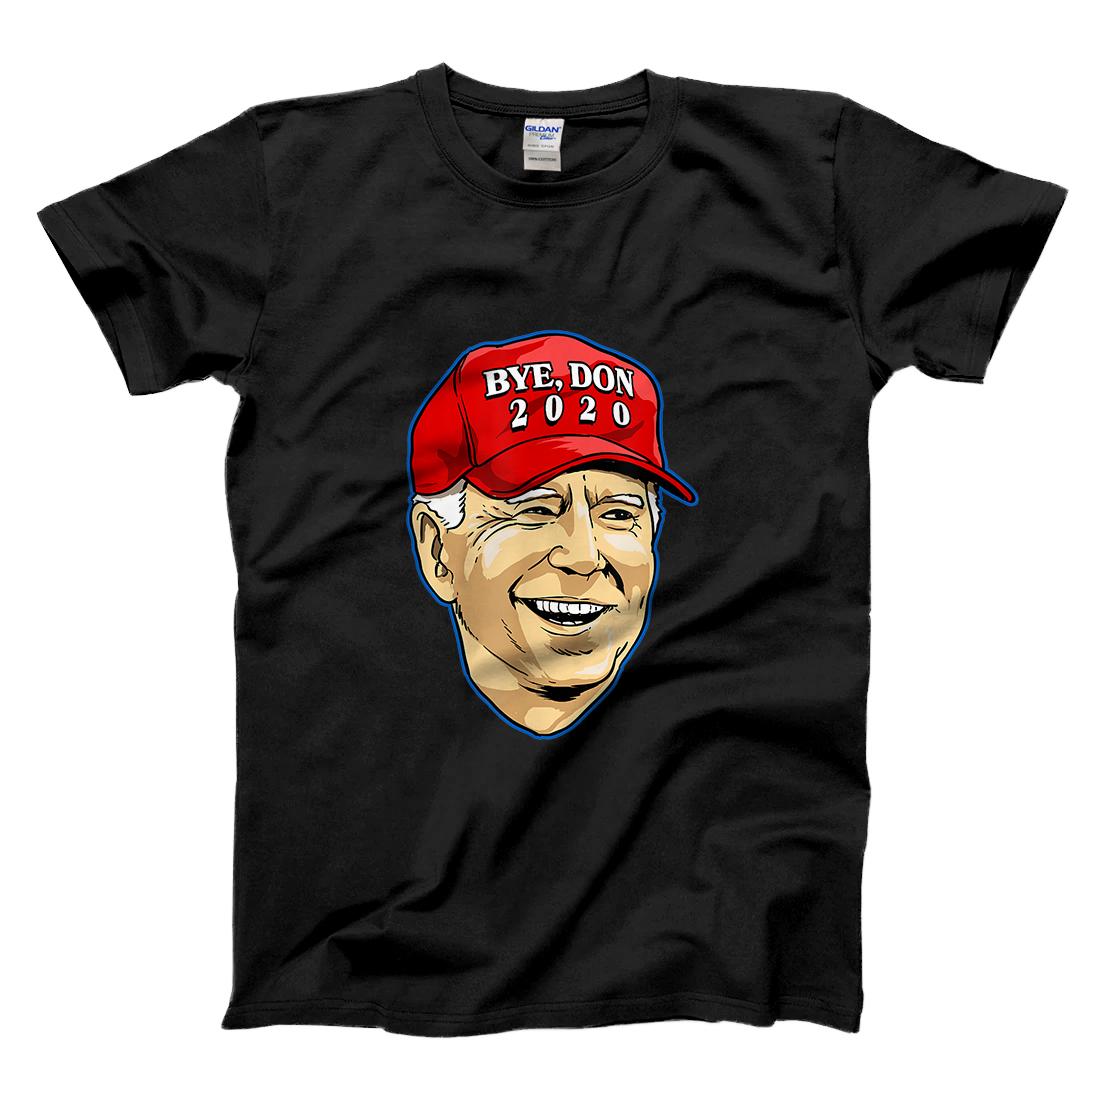 Personalized Bye Don 2020 ByeDon Hat Funny Joe Biden Anti-Trump T-Shirt